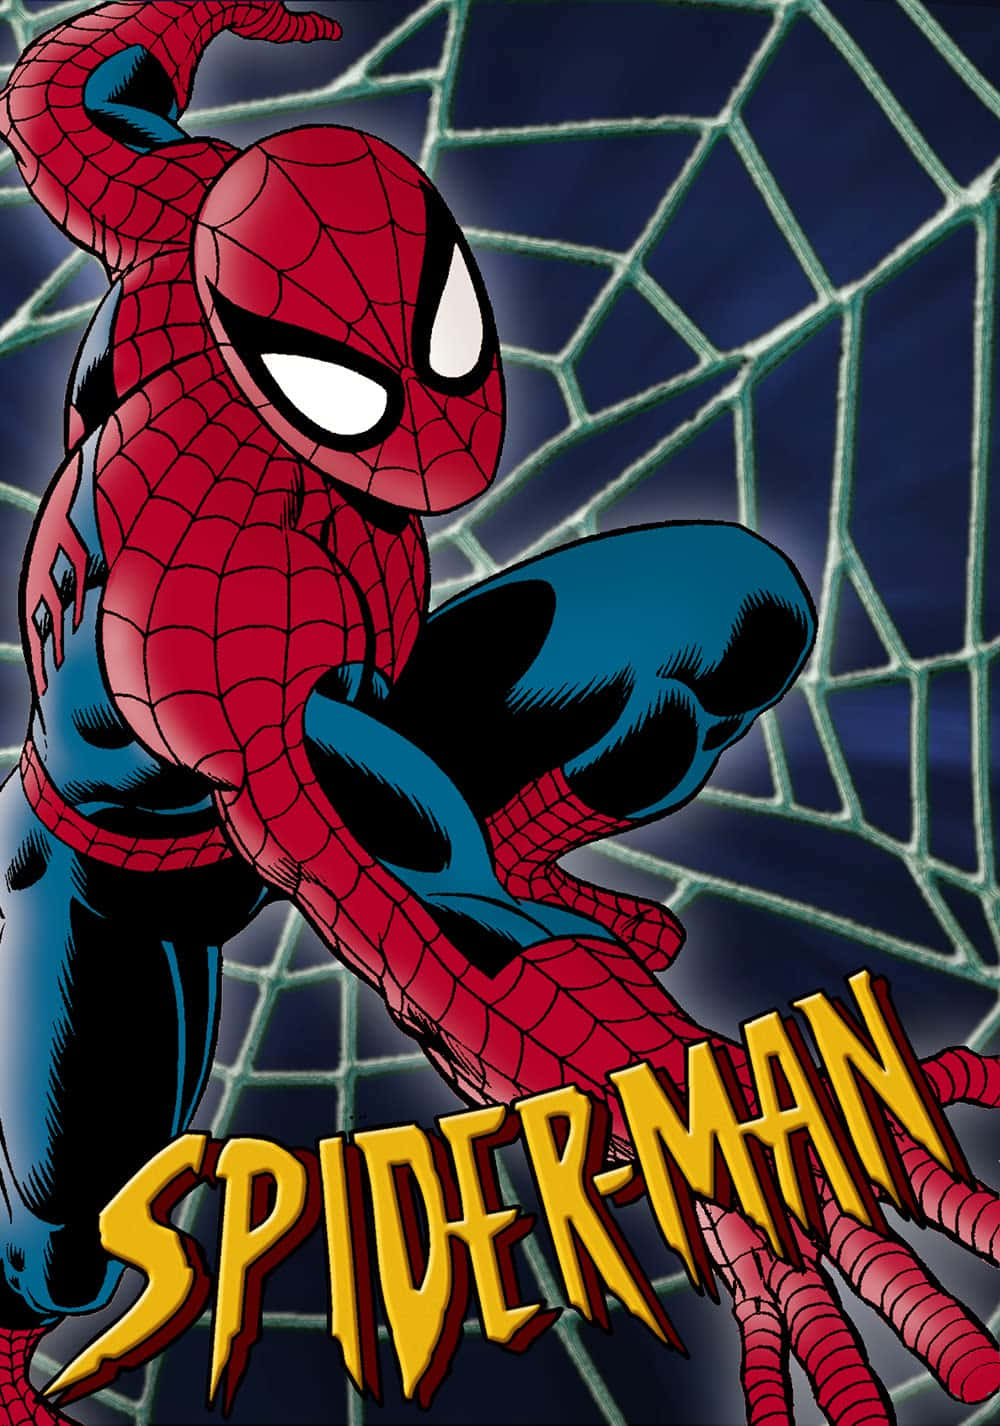 "The Amazing Spiderman!"